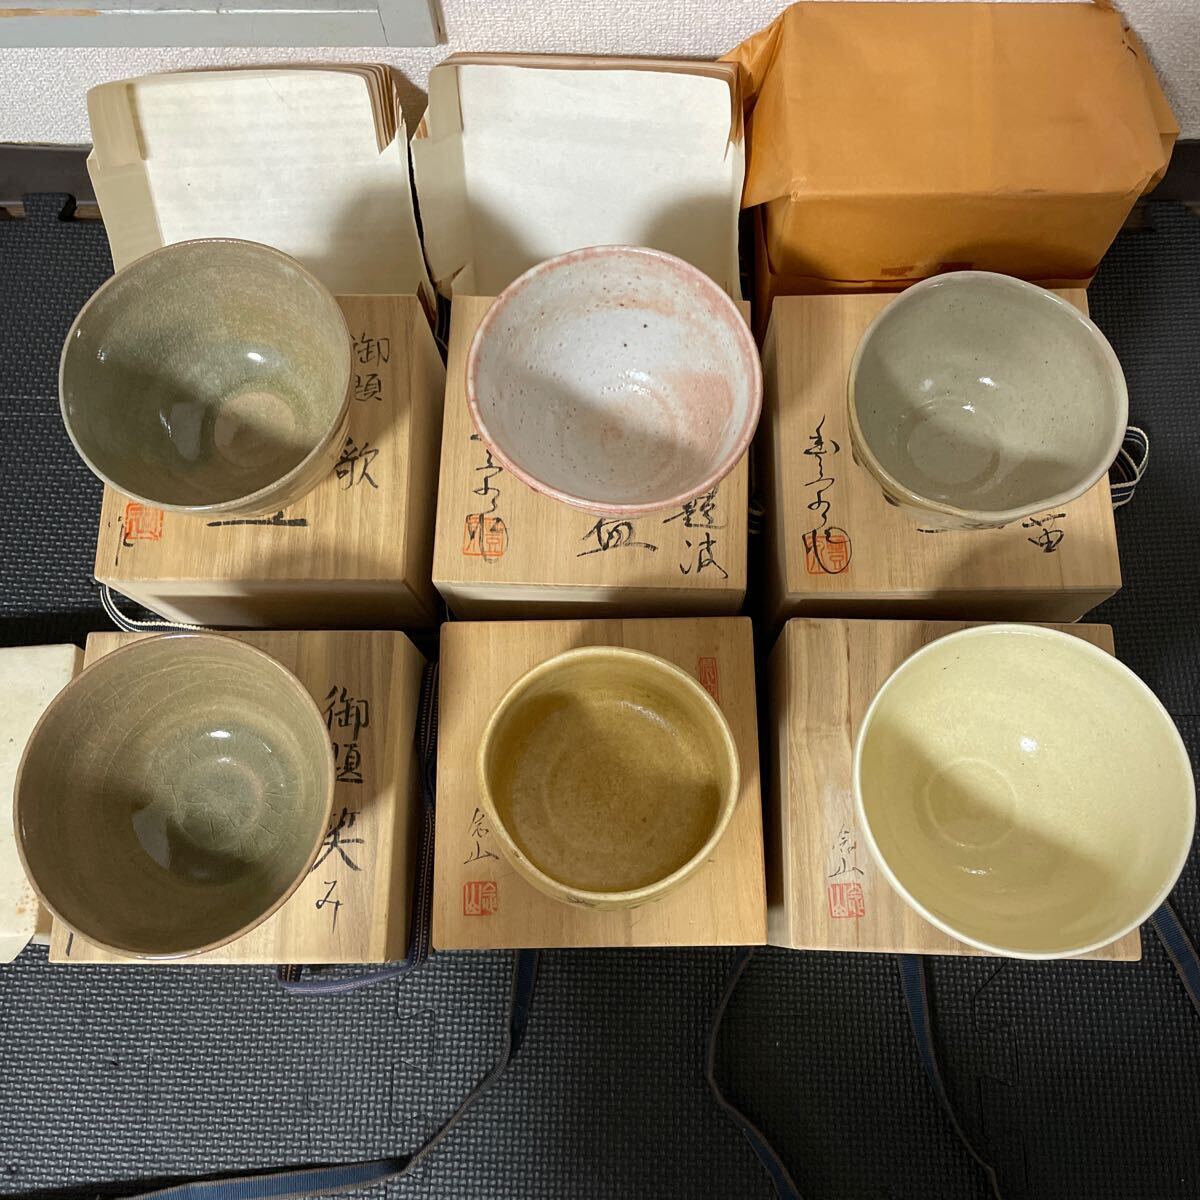 茶碗 茶道具 茶器 抹茶碗 煎茶道具 陶器 お題茶碗 和食器 三木 念山 他 6個セット IH10246hの画像2